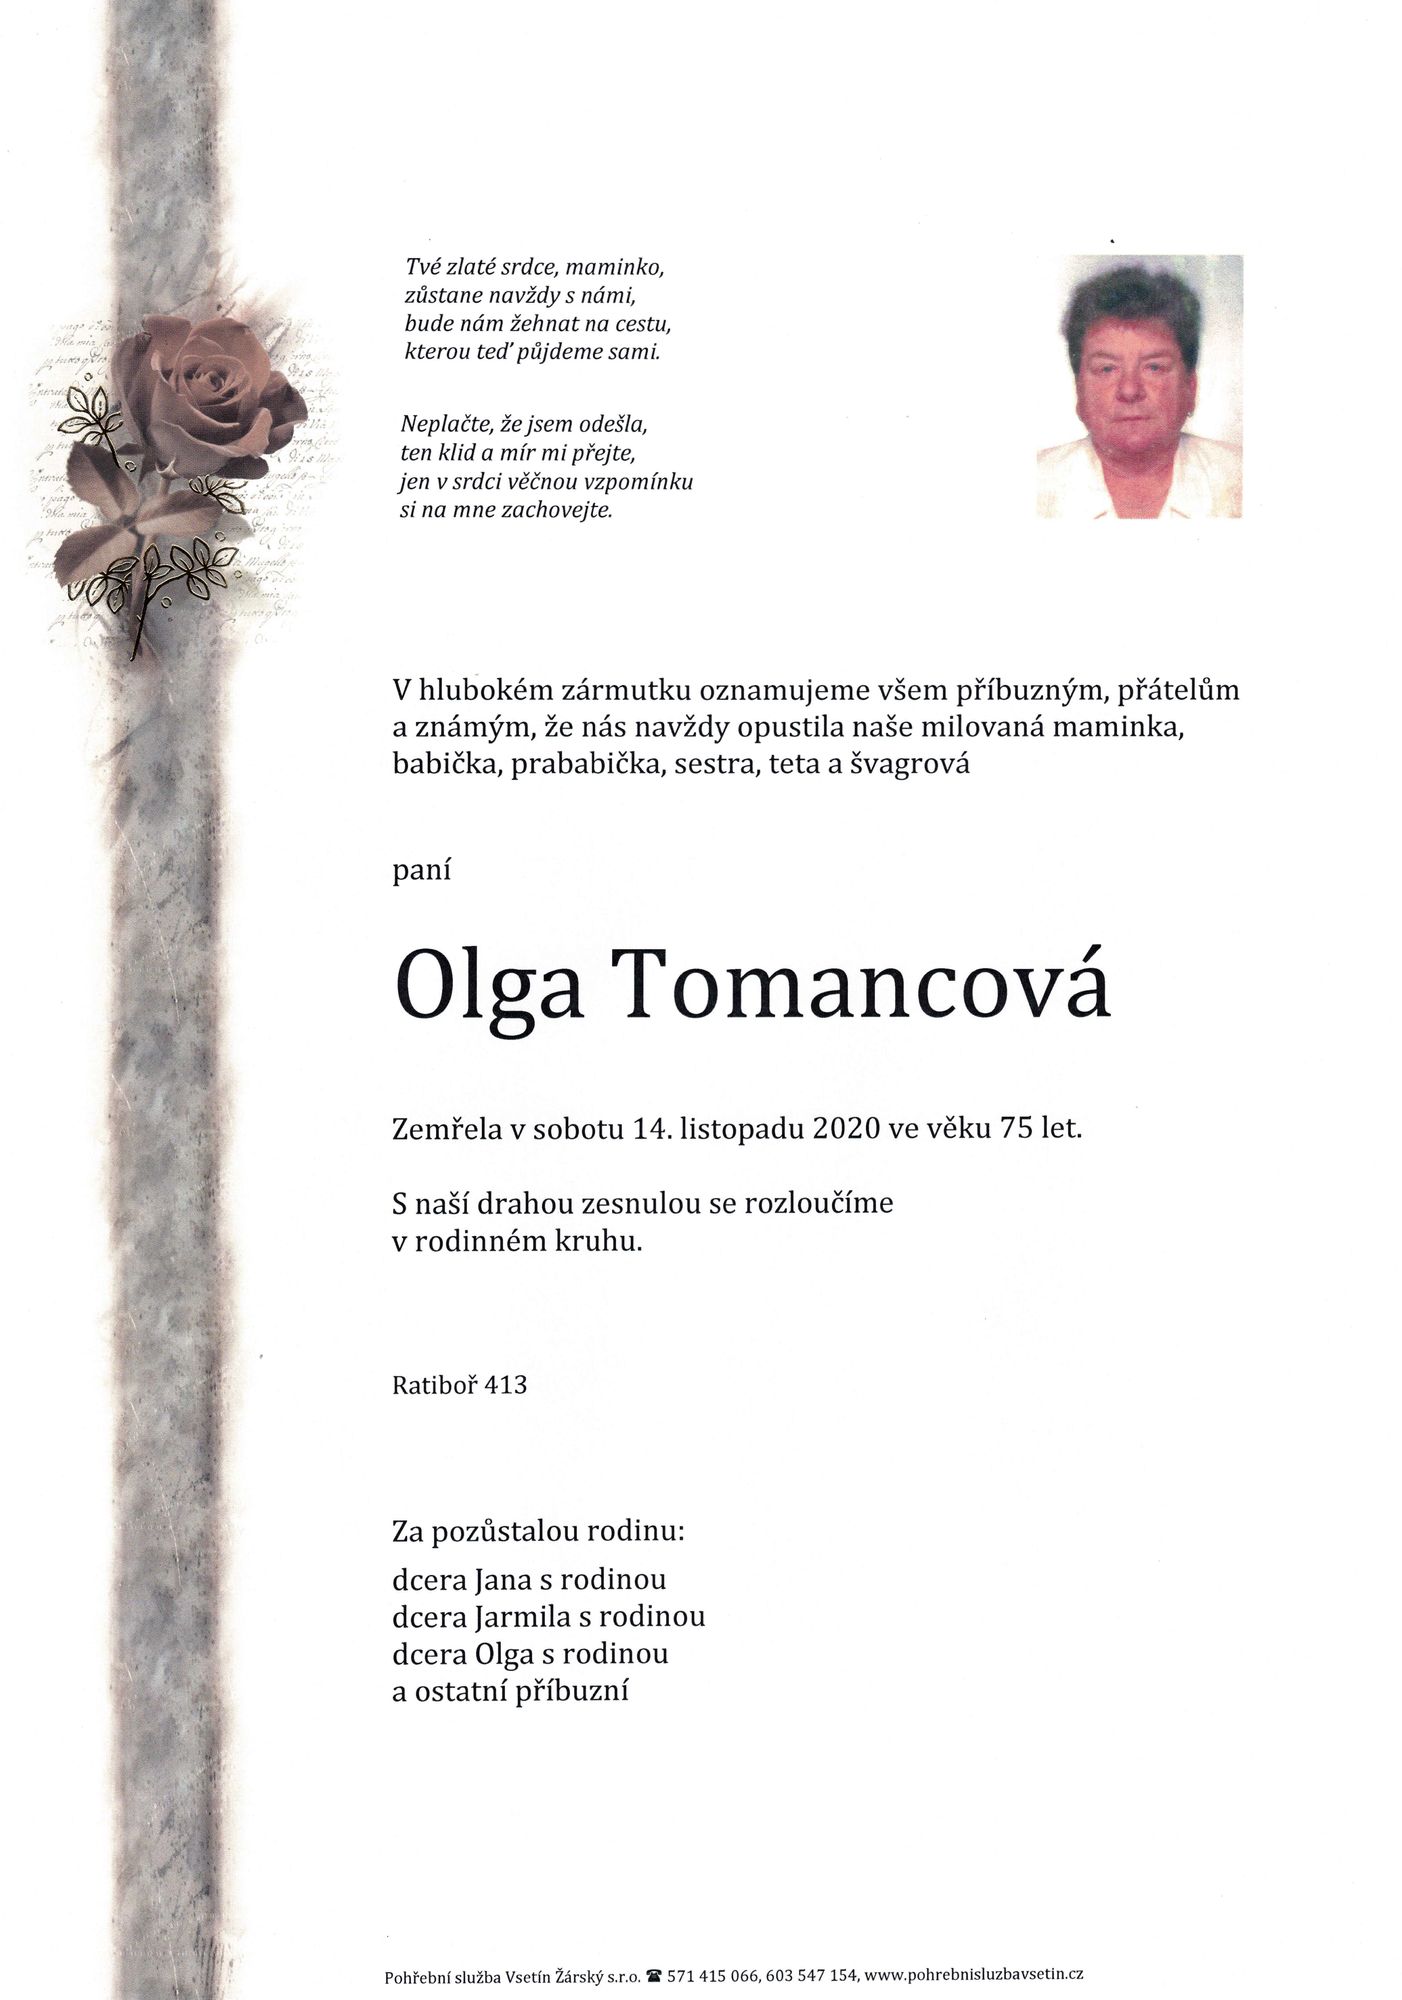 Olga Tomancová